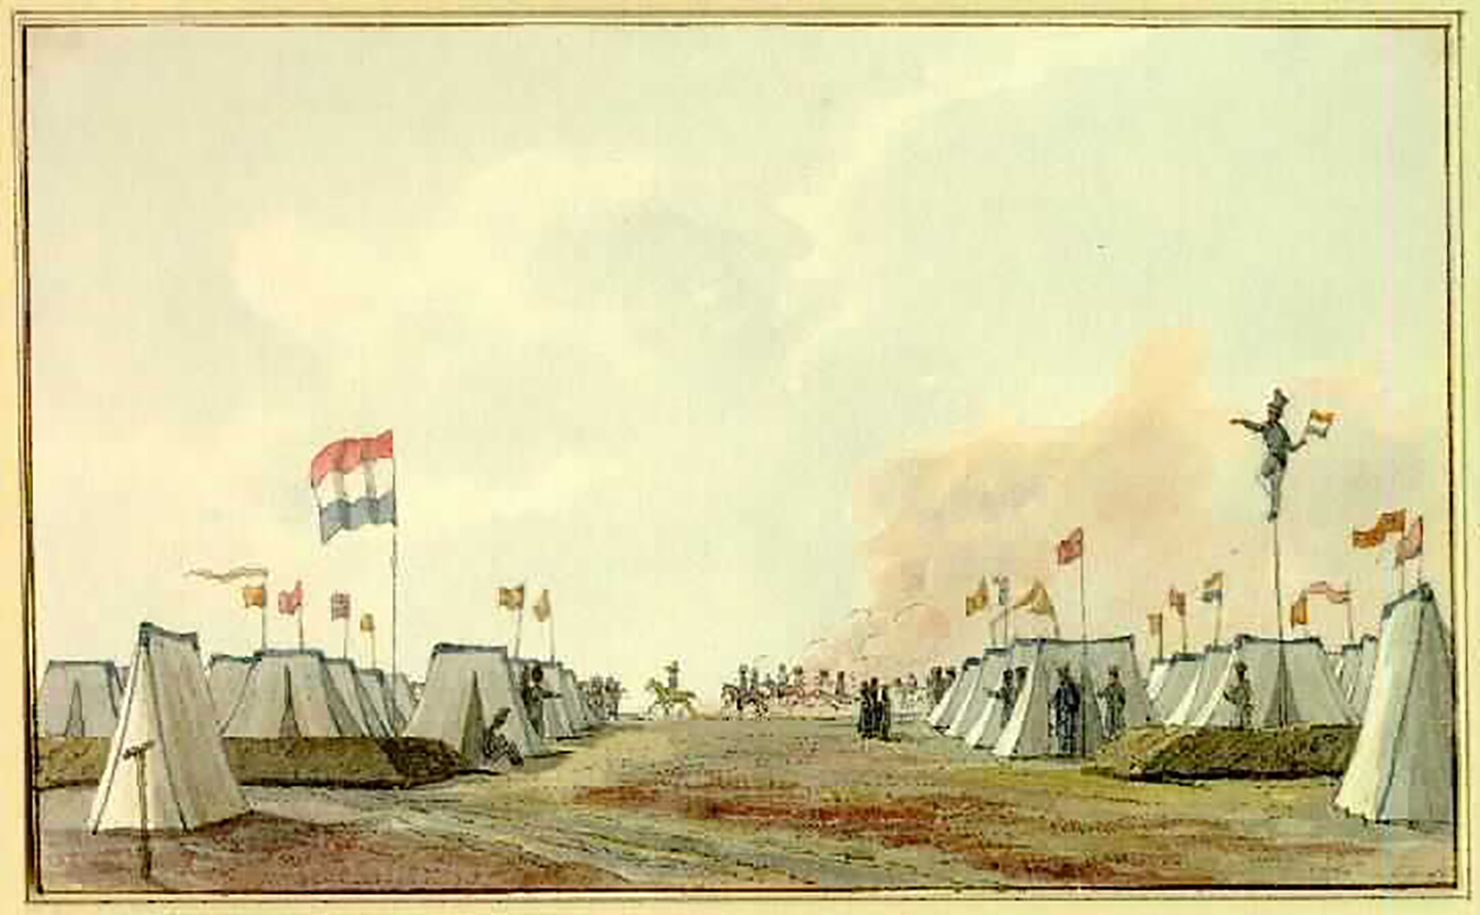 50 Parade prins Frederik 18 juni 1831 DT Gevers van Endegeest Atlas van Stolk+